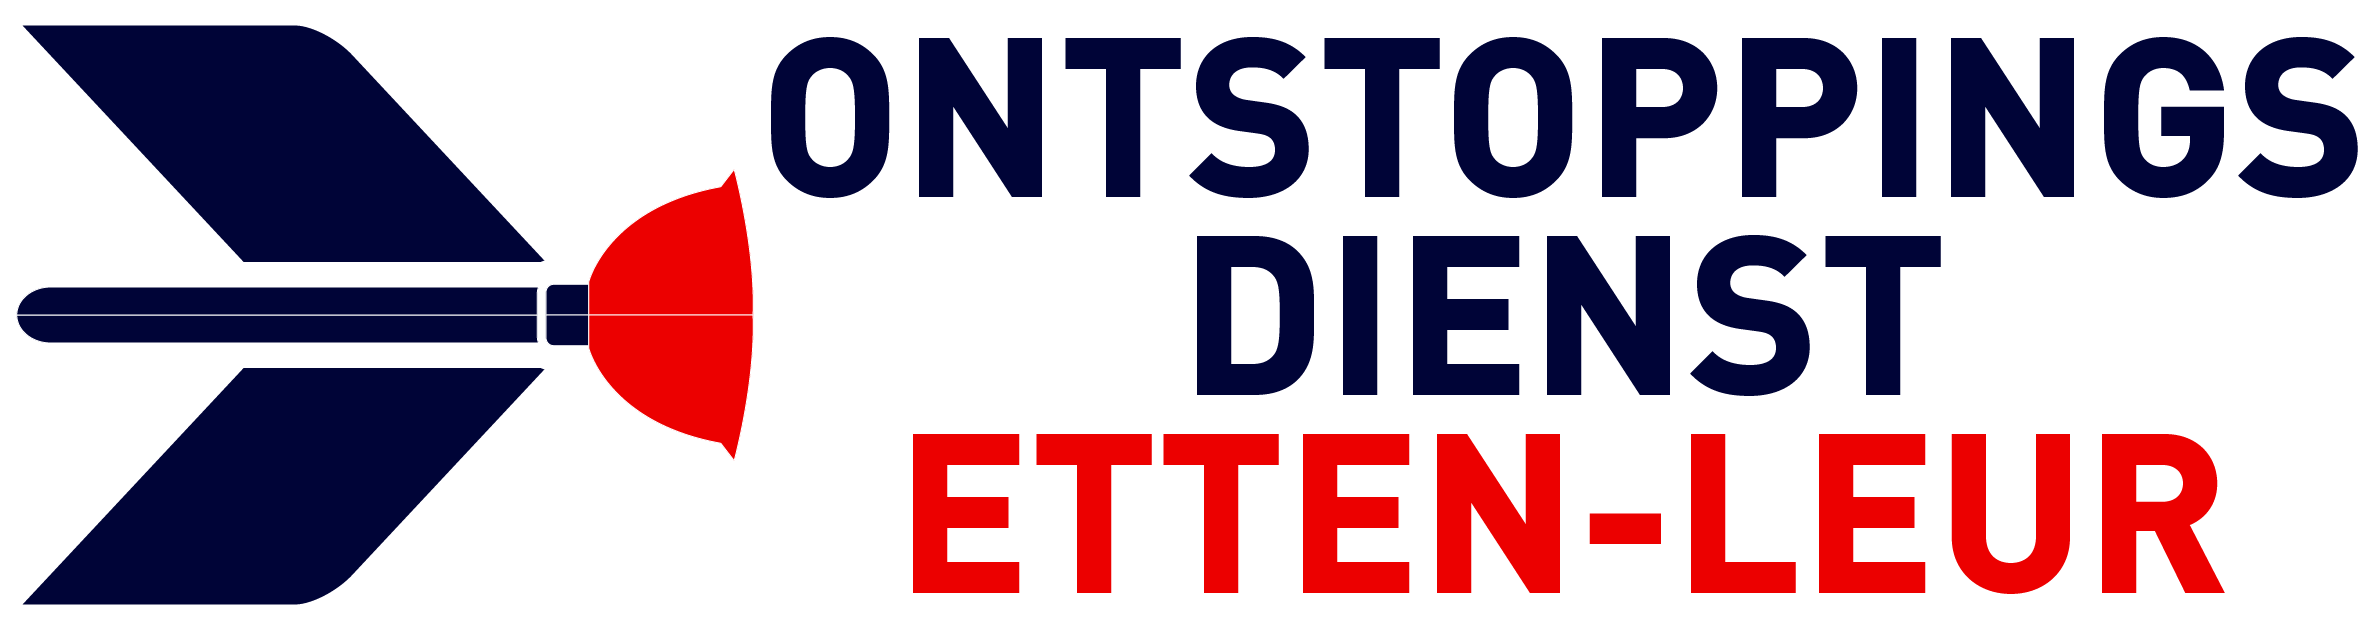 Ontstoppingsdienst Etten-Leur logo